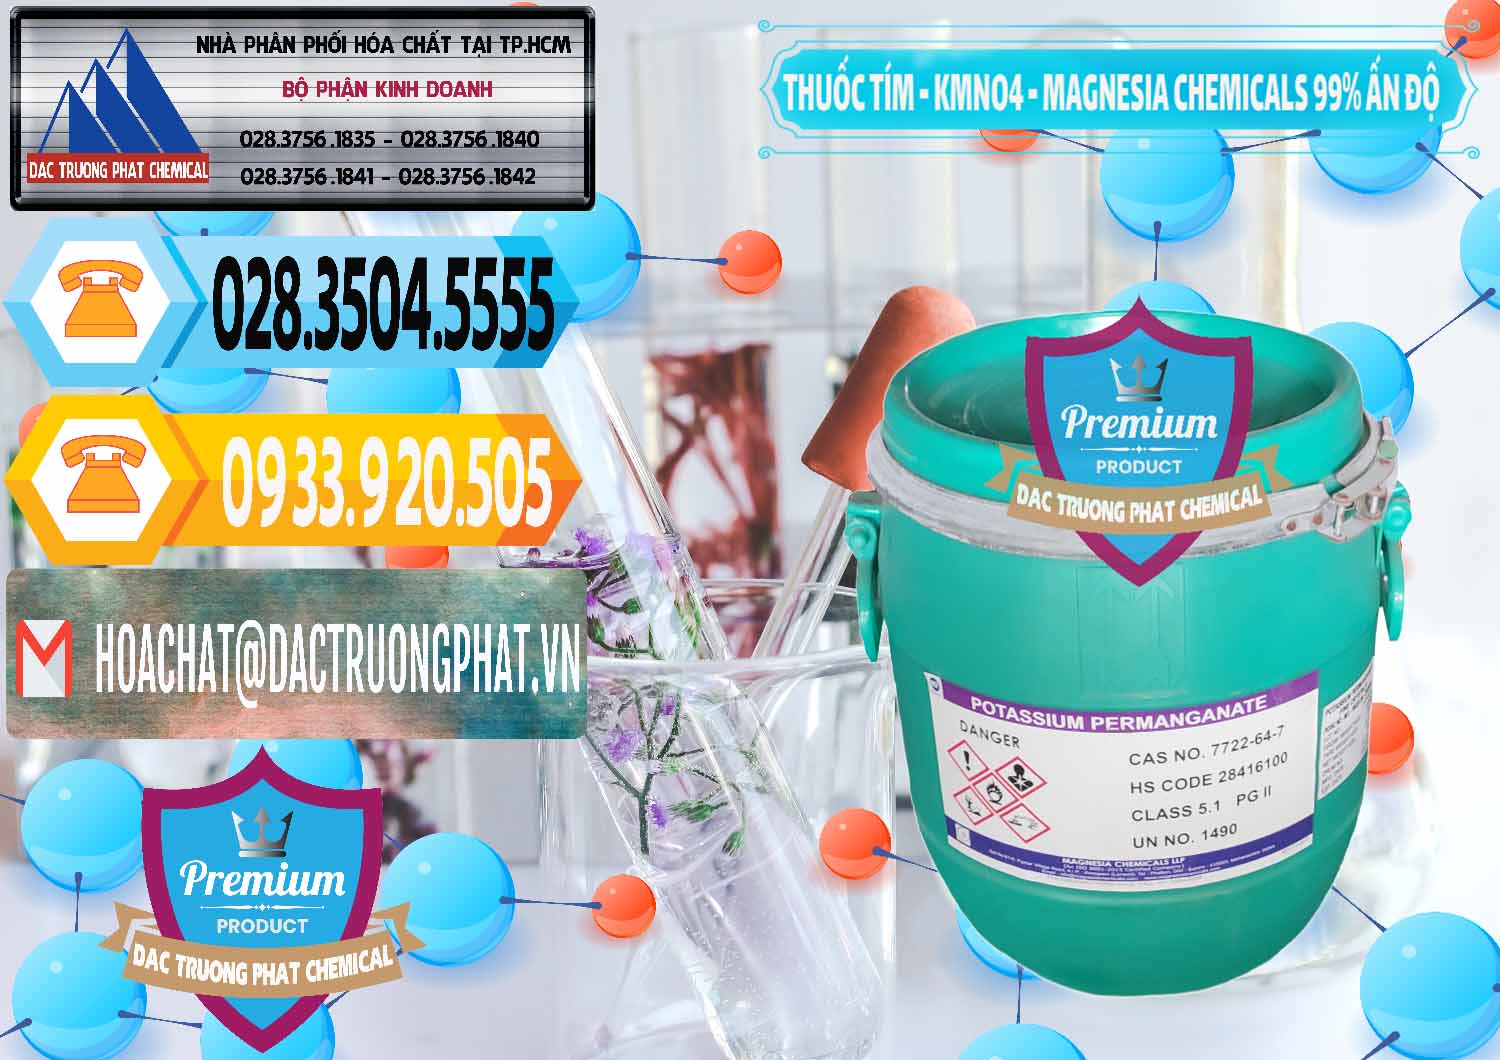 Công ty phân phối ( bán ) Thuốc Tím - KMNO4 Magnesia Chemicals 99% Ấn Độ India - 0251 - Chuyên kinh doanh ( cung cấp ) hóa chất tại TP.HCM - hoachattayrua.net